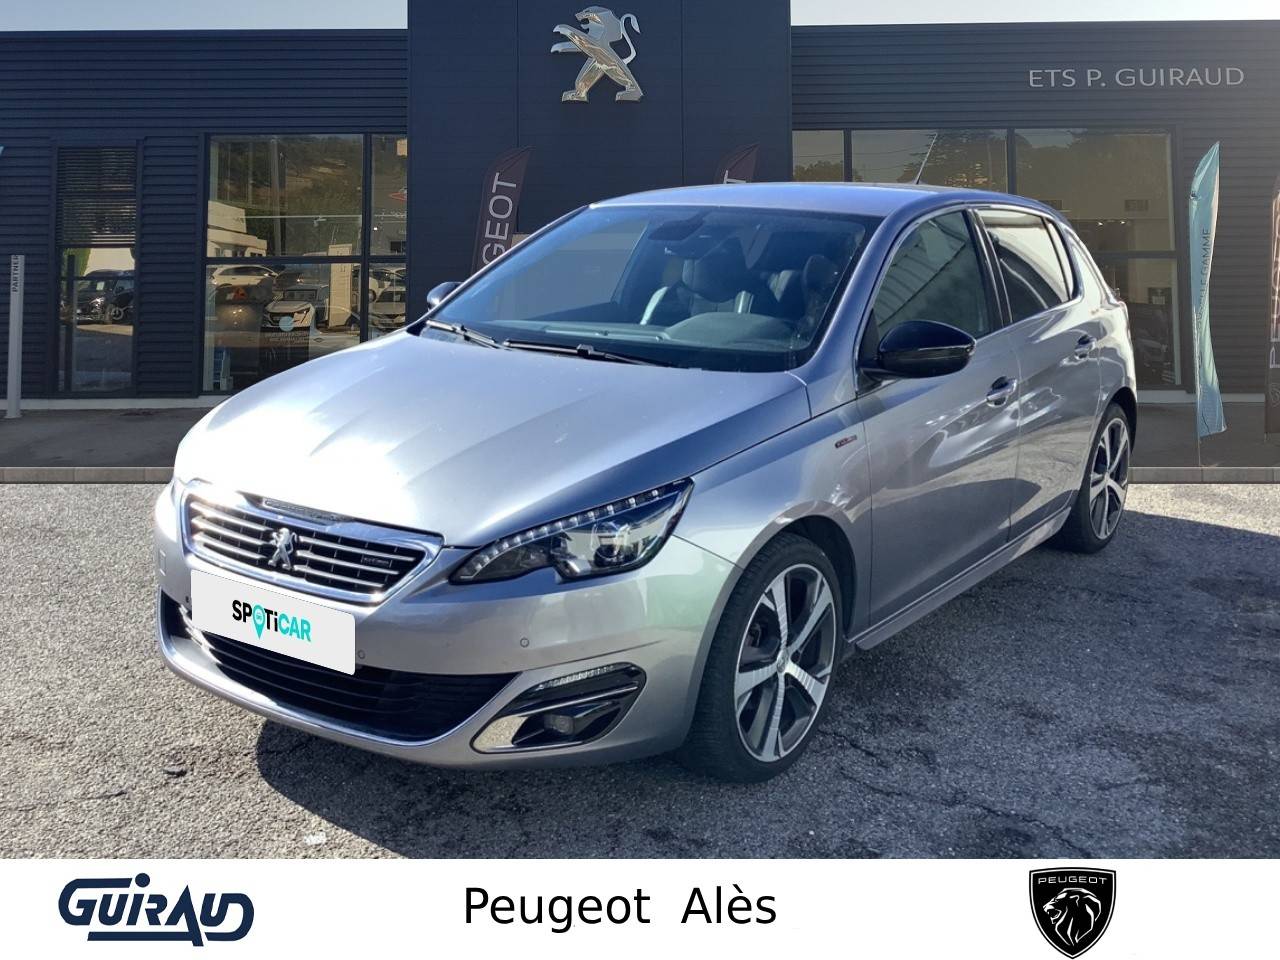 PEUGEOT 308 | 308 1.6 BlueHDi 120ch S&S BVM6 occasion - Peugeot Alès